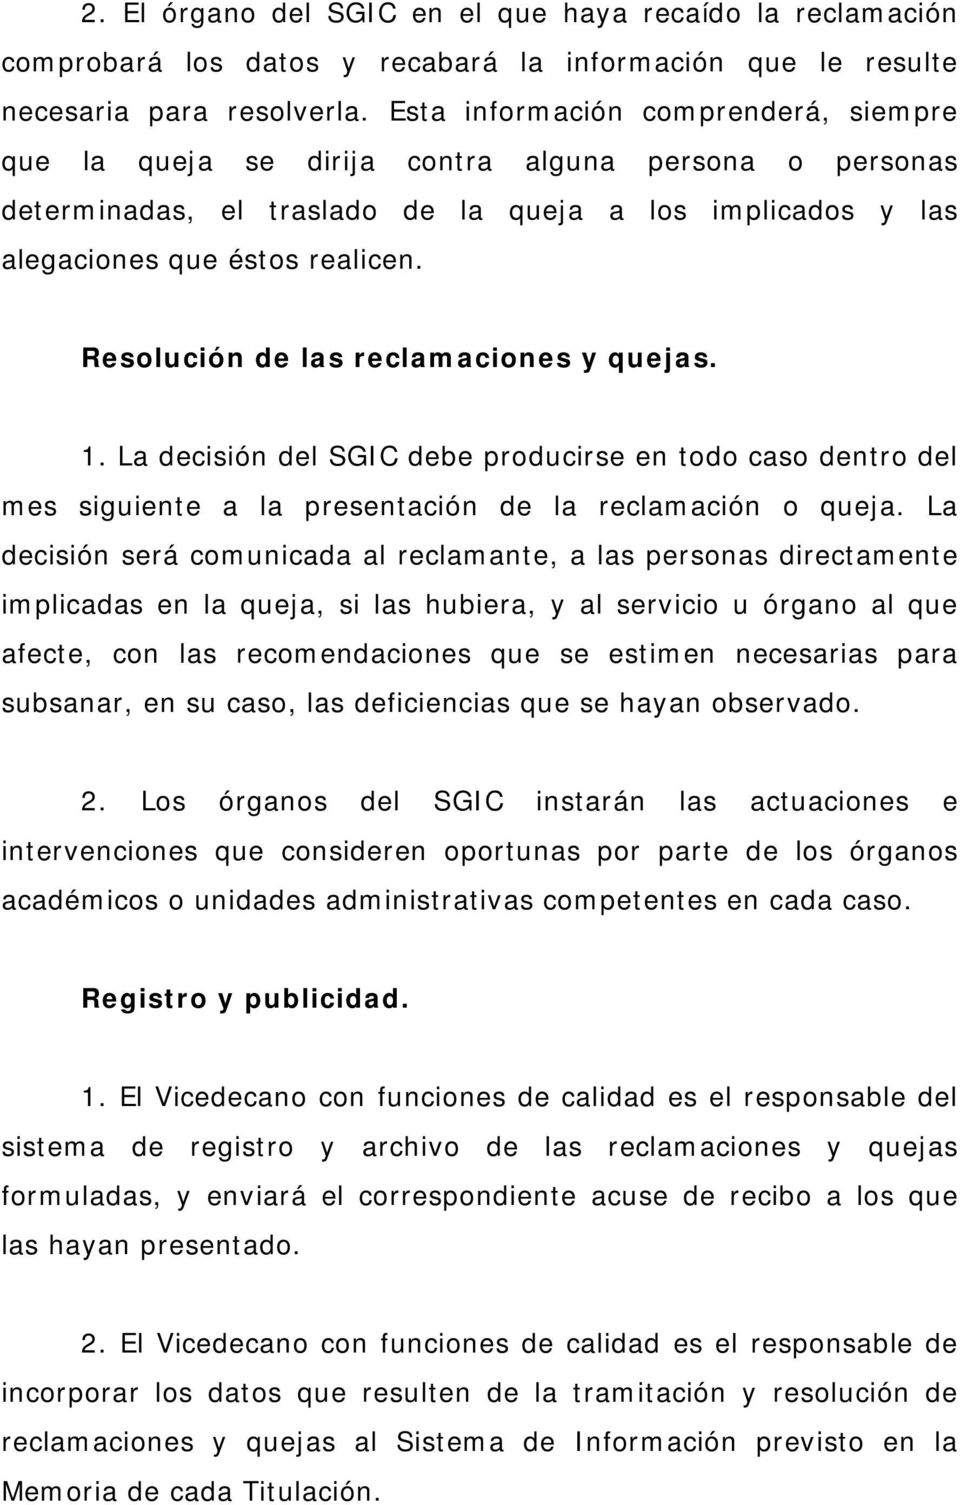 Resolución de las reclamaciones y quejas. 1. La decisión del SGIC debe producirse en todo caso dentro del mes siguiente a la presentación de la reclamación o queja.